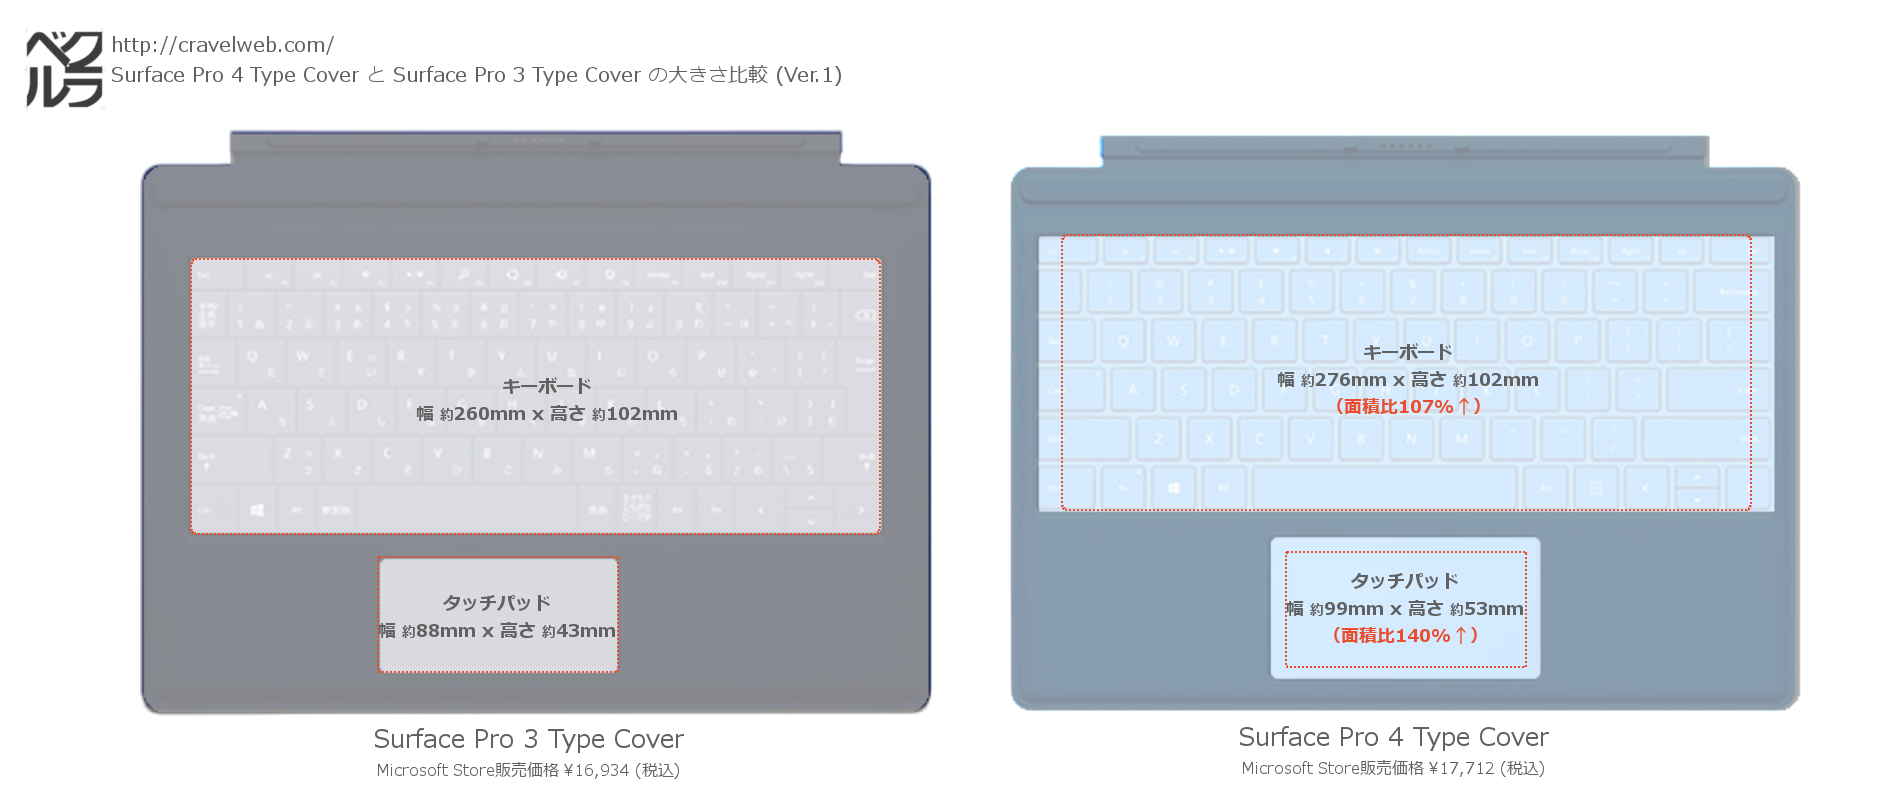 Surface Pro 4 Type CoverとSurface Pro 3 Type Coverのキーボード、タッチパッドサイズおよび面積の比較画像